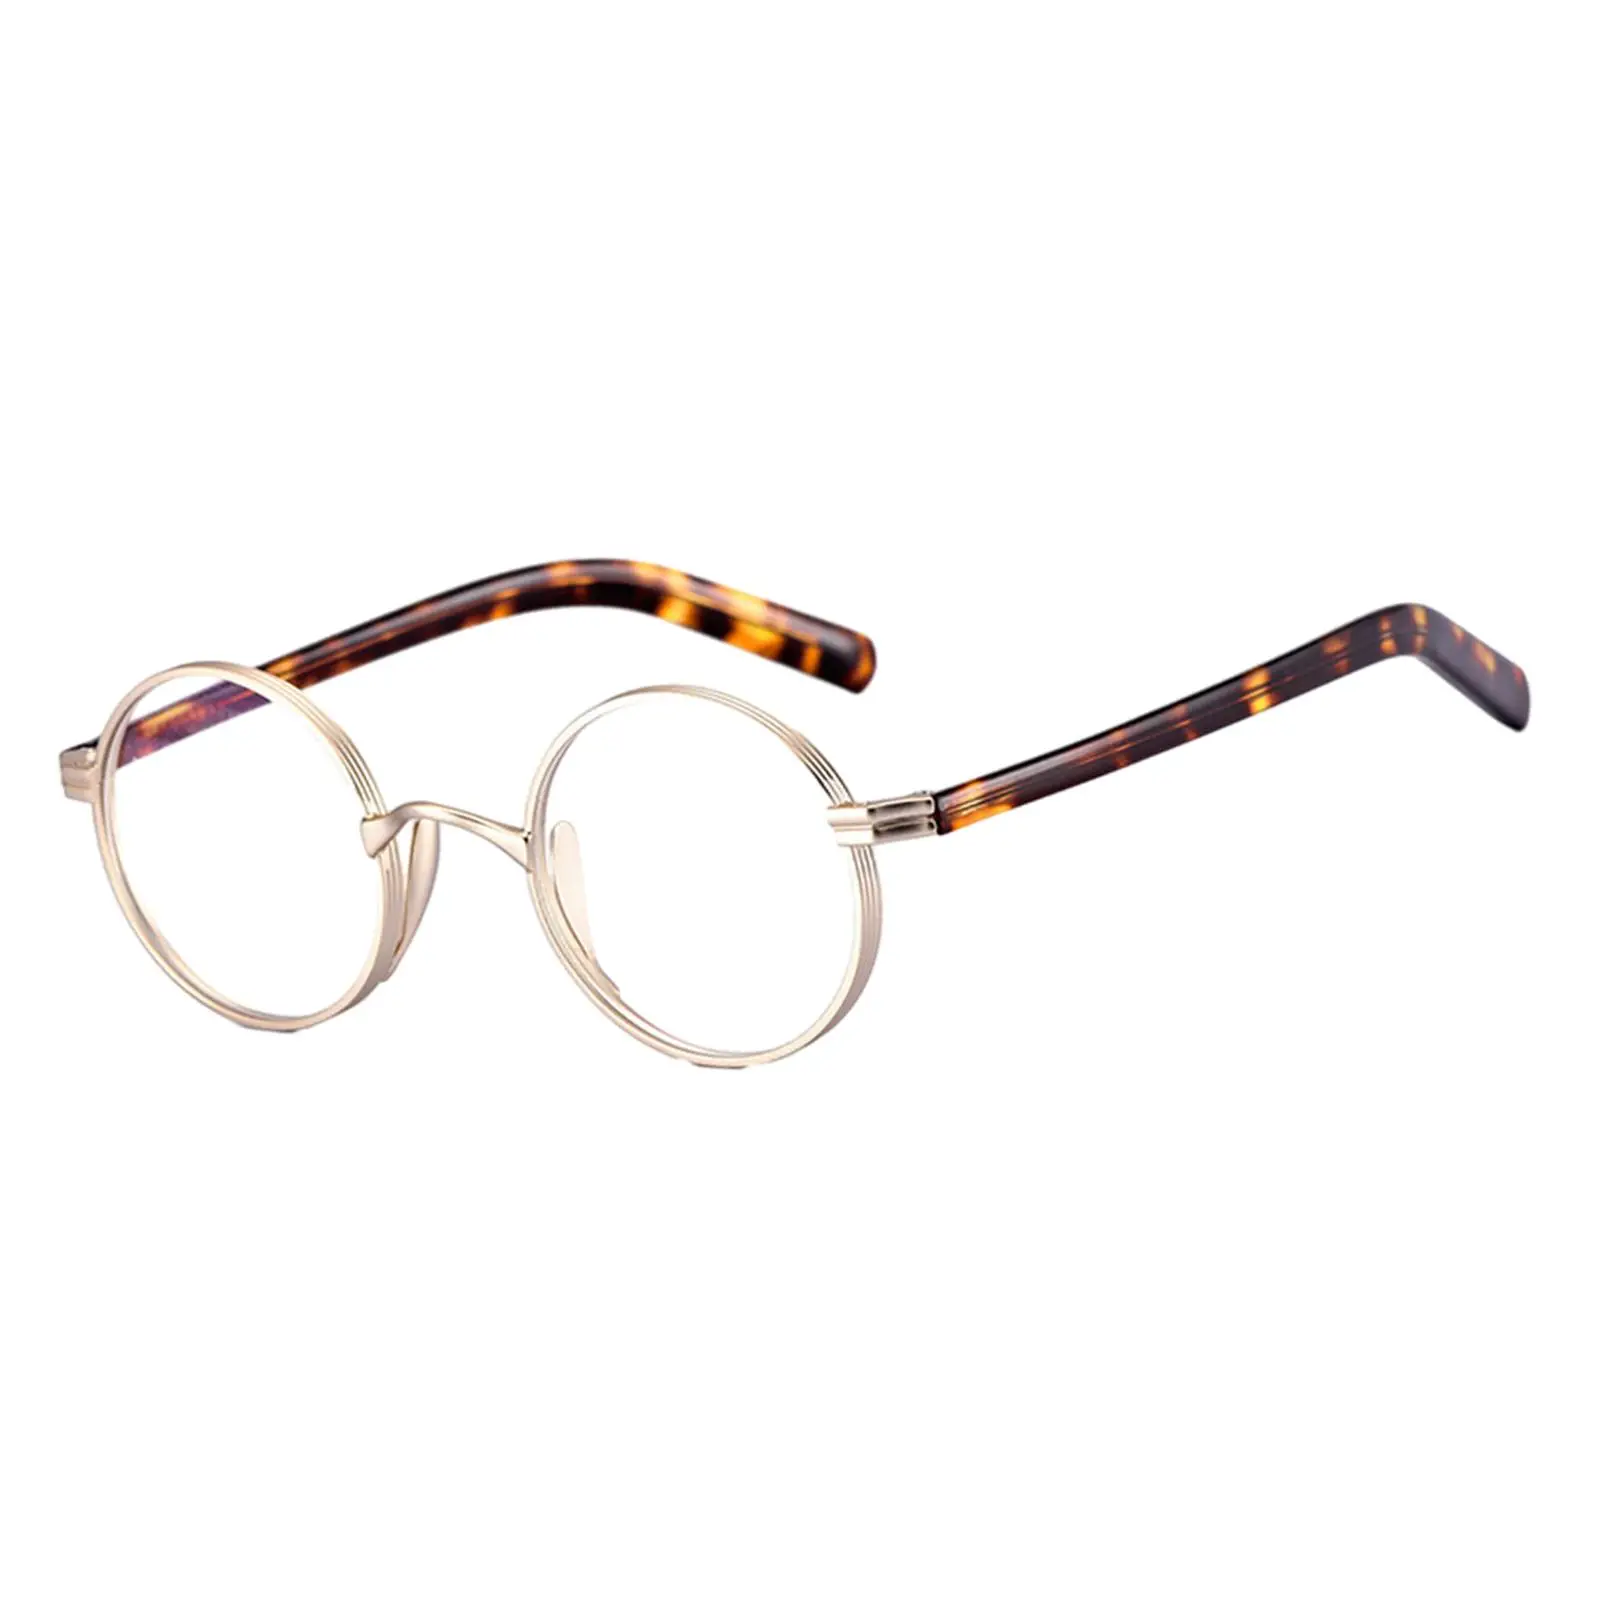 Glasses Frames Comfortable to Wear Ultralight Full Rim Classical Retro for Women Men Oval Round Eyeglasses Frames Eyeglass Frame